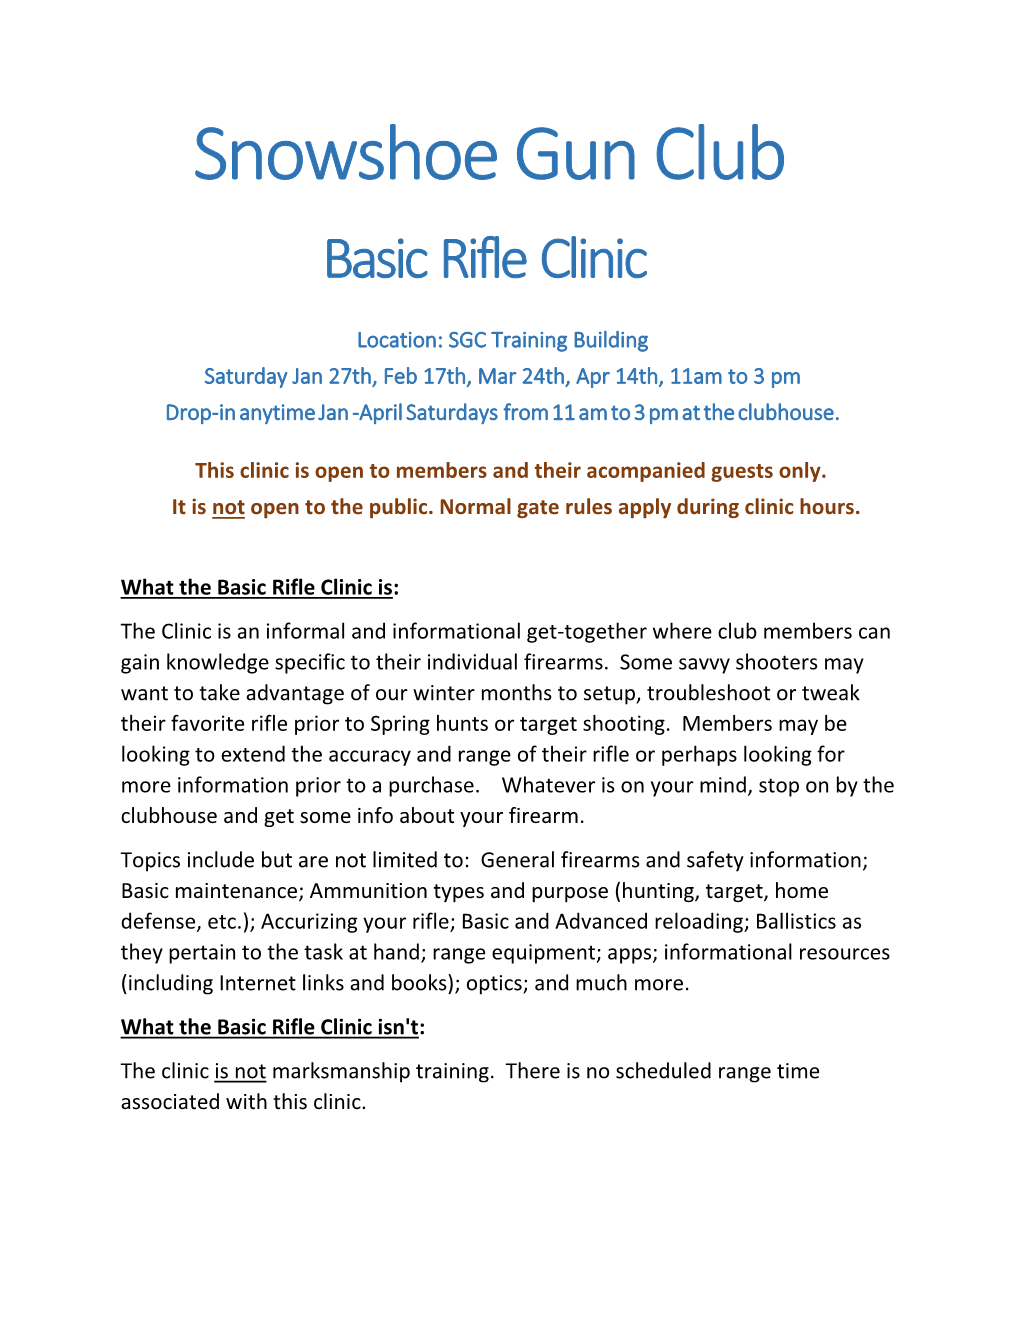 Snowshoe Gun Club Basic Rifle Clinic